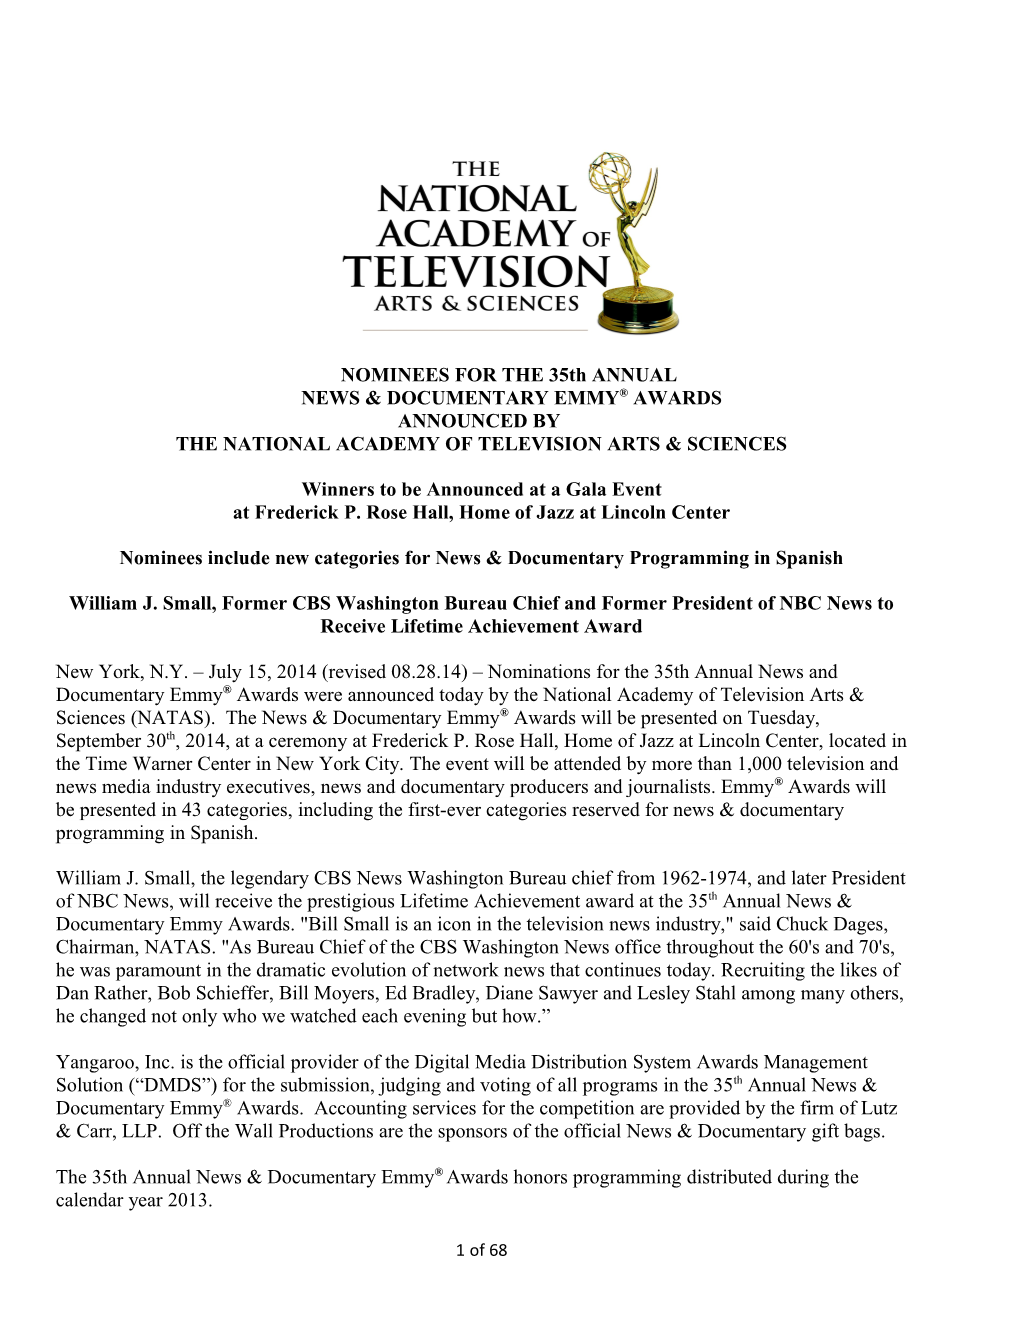 News & Documentary Emmy Awards